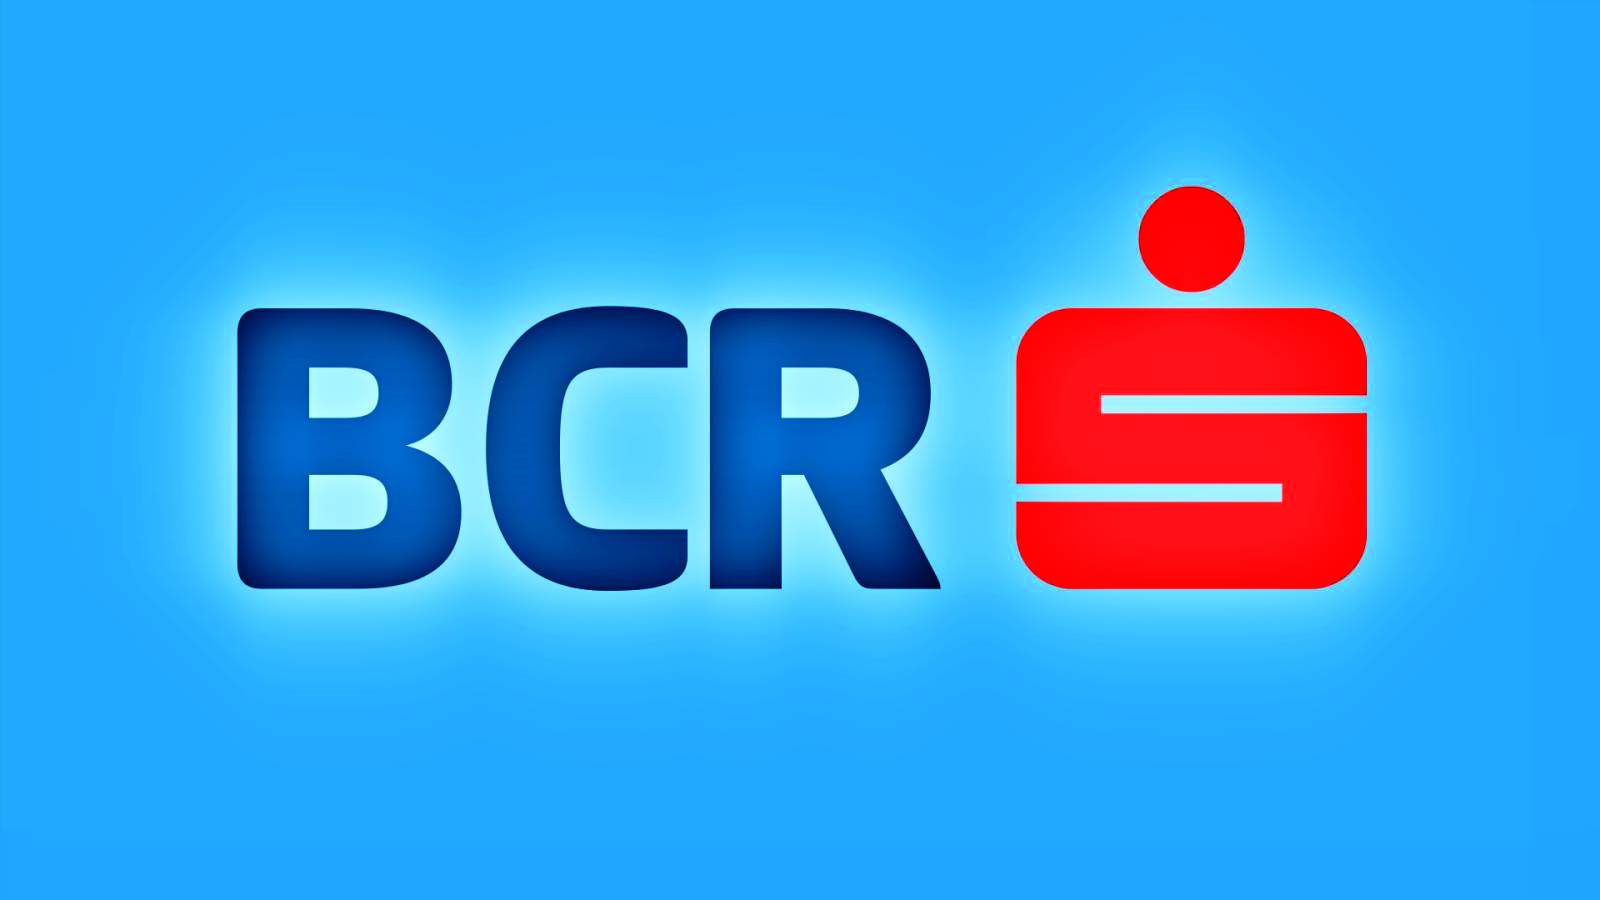 BCR Rumænien valg